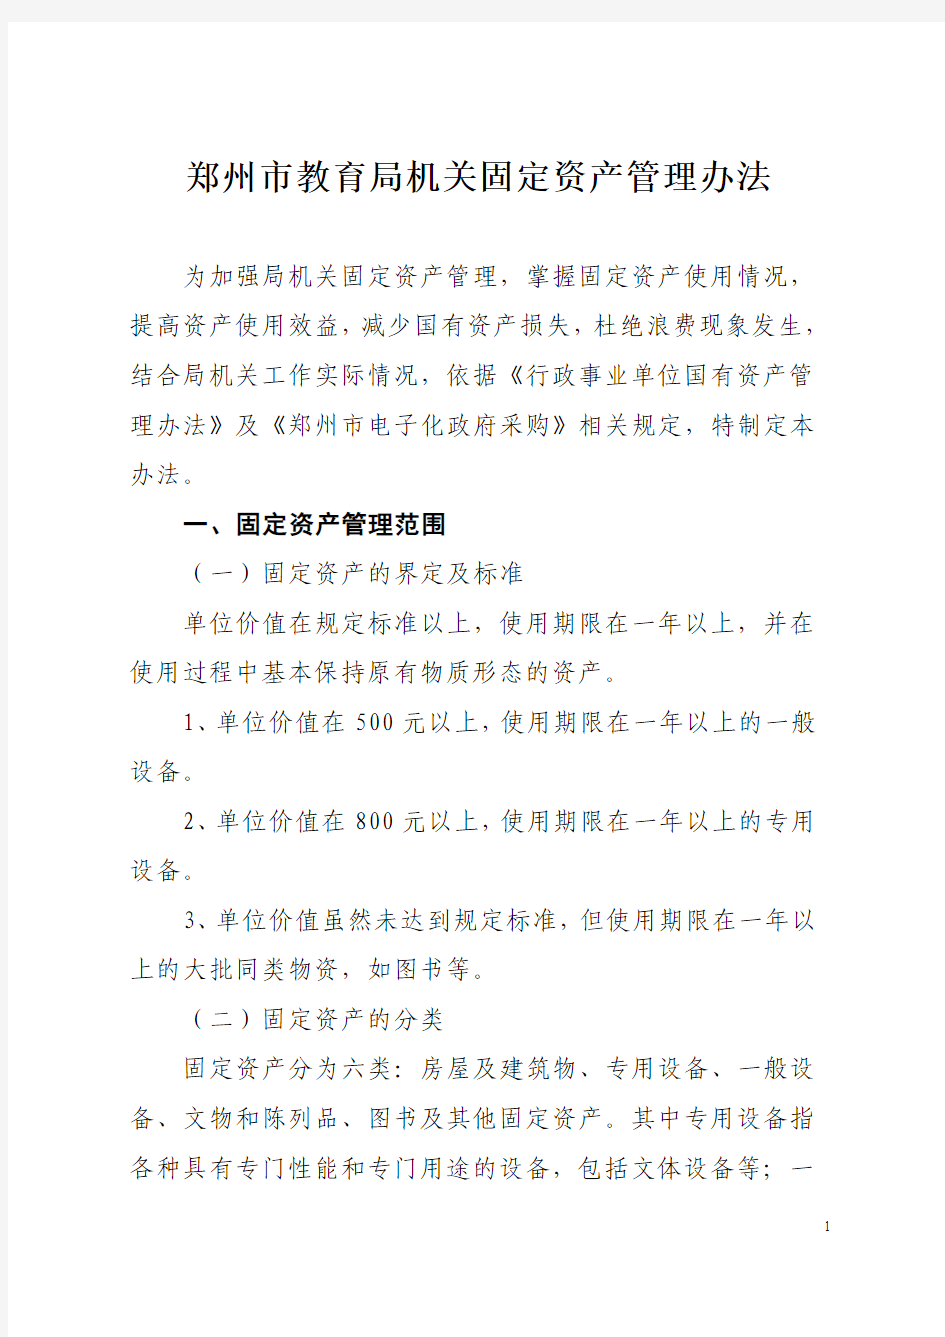 郑州市教育局机关固定资产管理办法